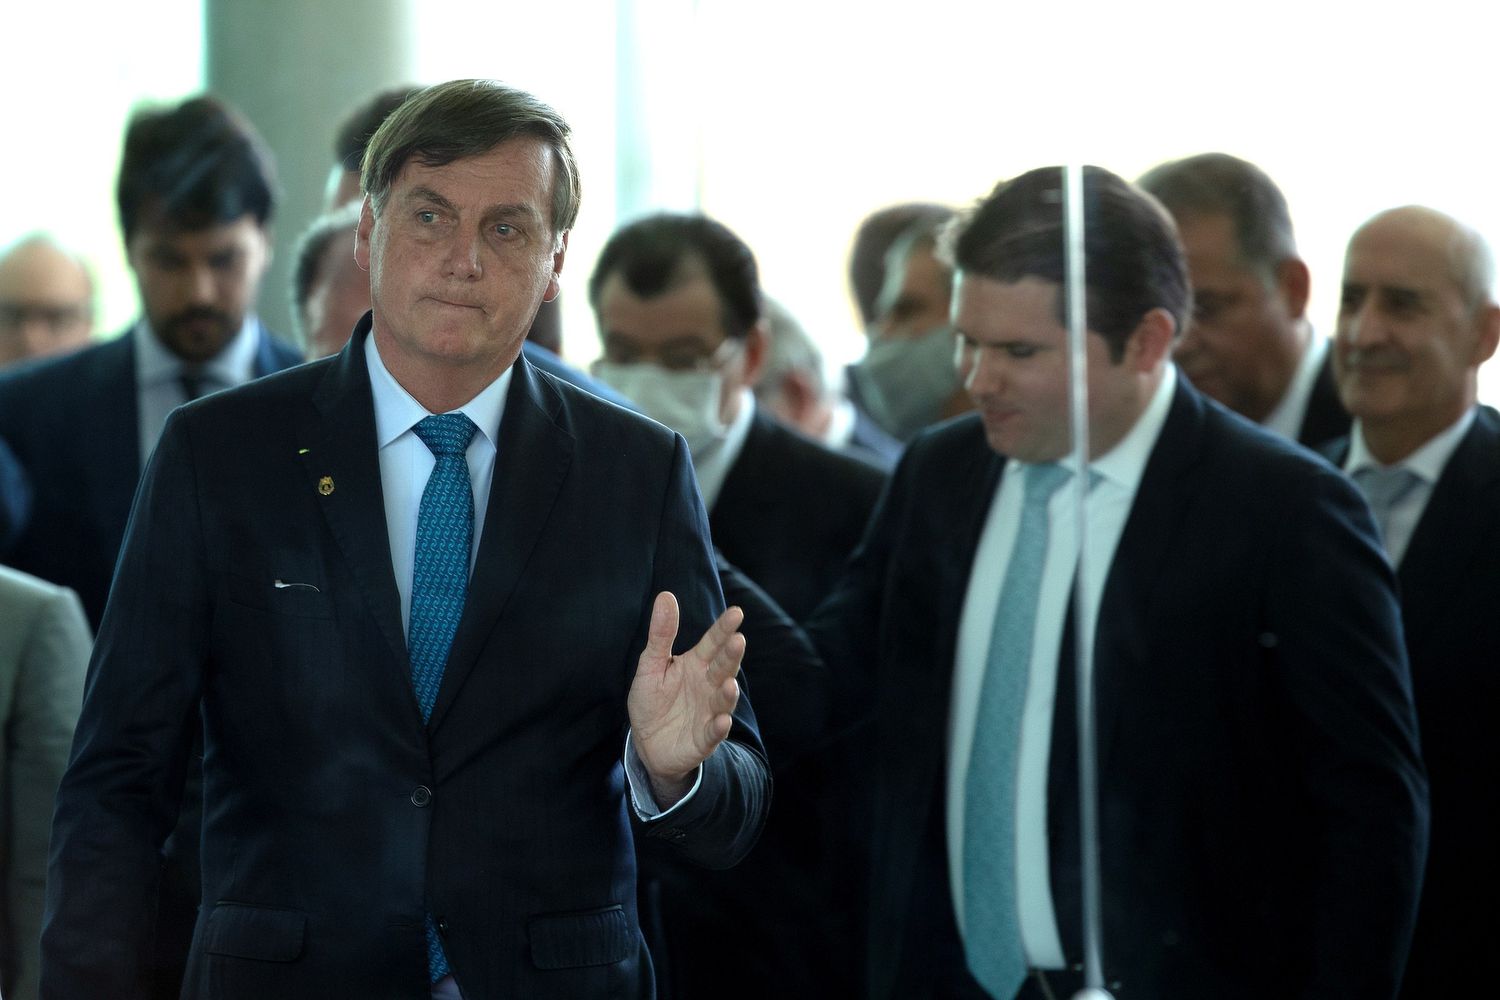 Presidente Jair Bolsonaro acompanhado por parlamentares após anúncio do novo programa social, o Renda Cidadã, em Brasília.